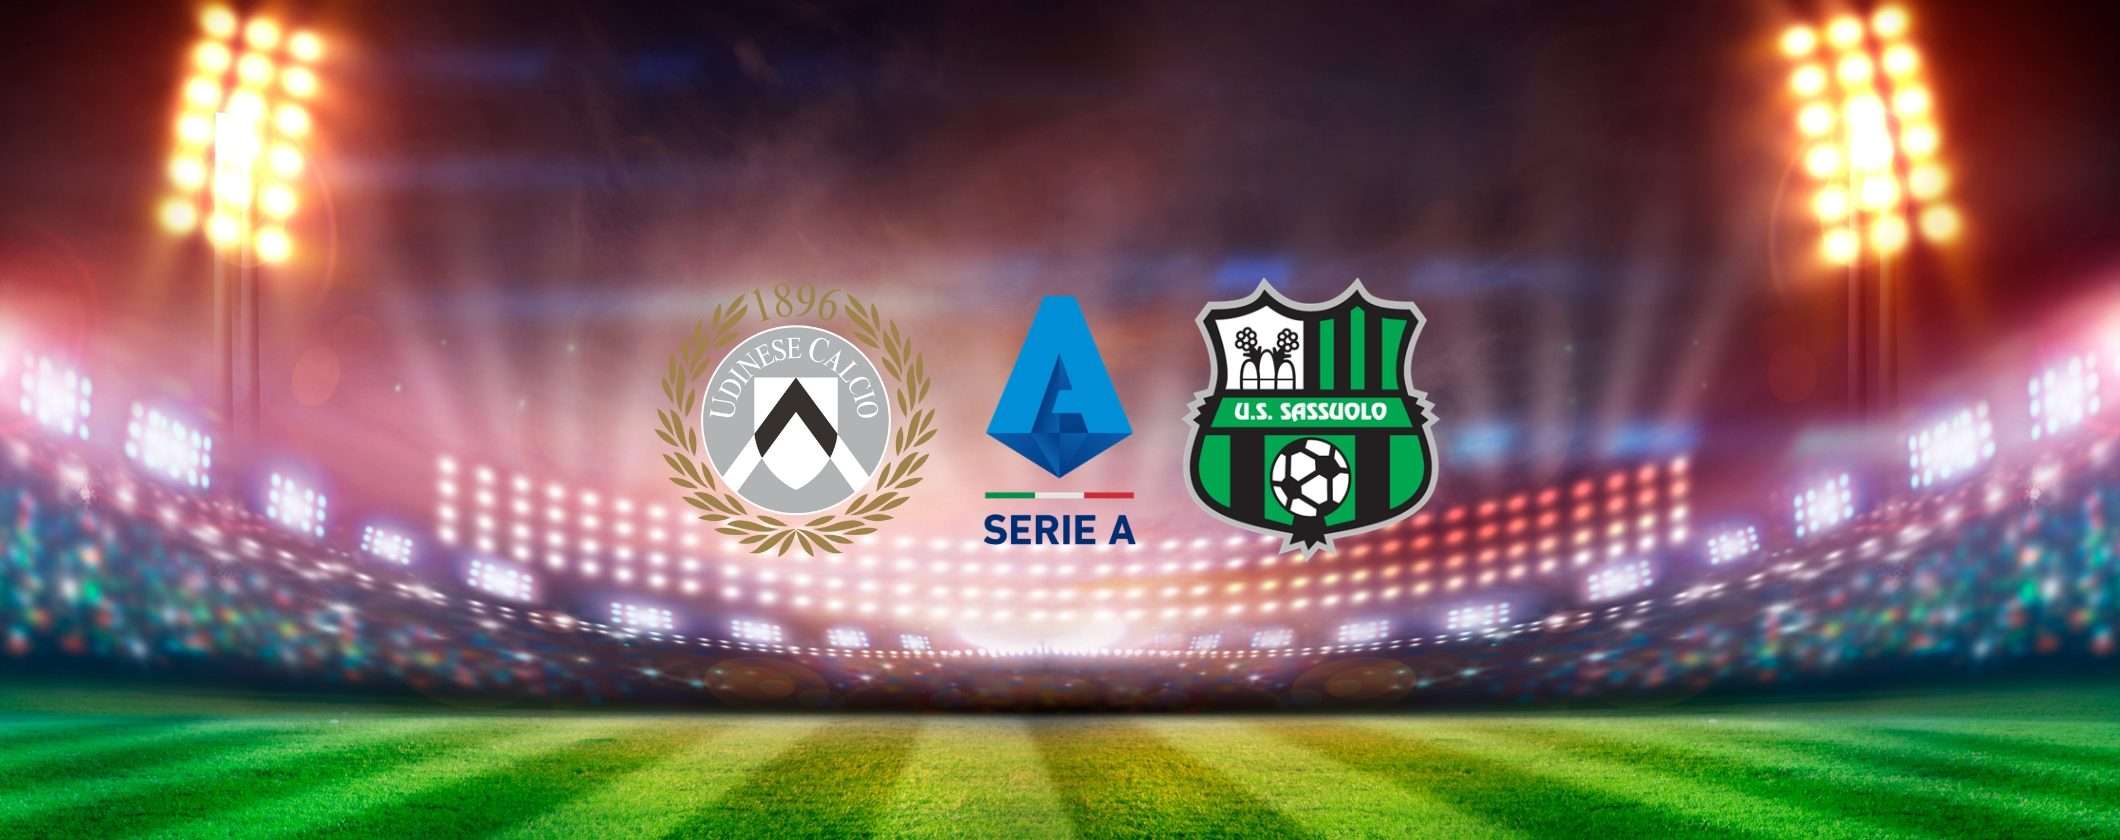 Segui Udinese-Sassuolo in diretta streaming, anche dall'estero